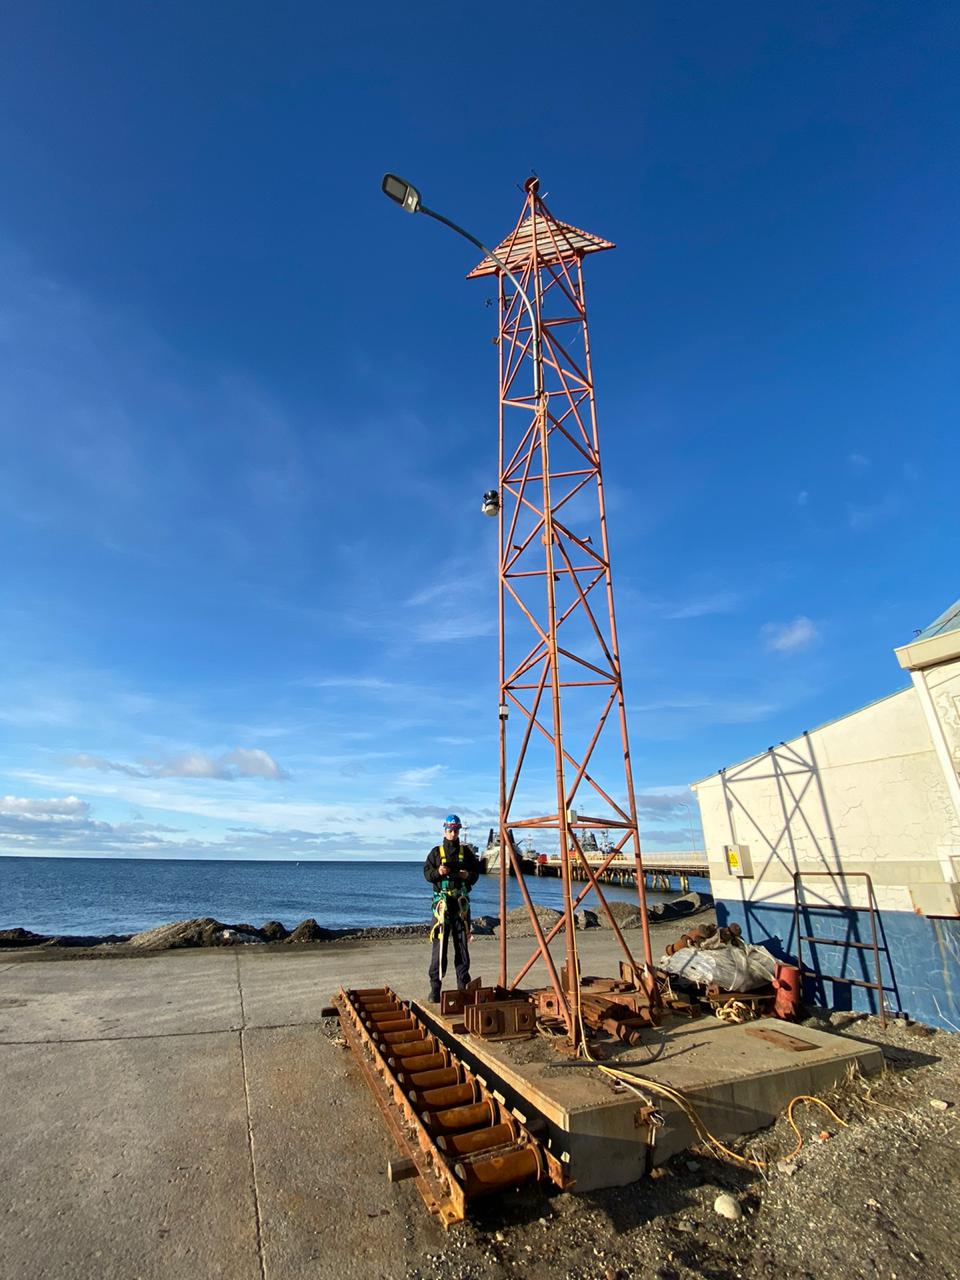 Centro Meteorológico con apoyo de ASMAR Magallanes,  instala Estación Meteorológica Automática en el sector norte de la bahía de Punta Arenas